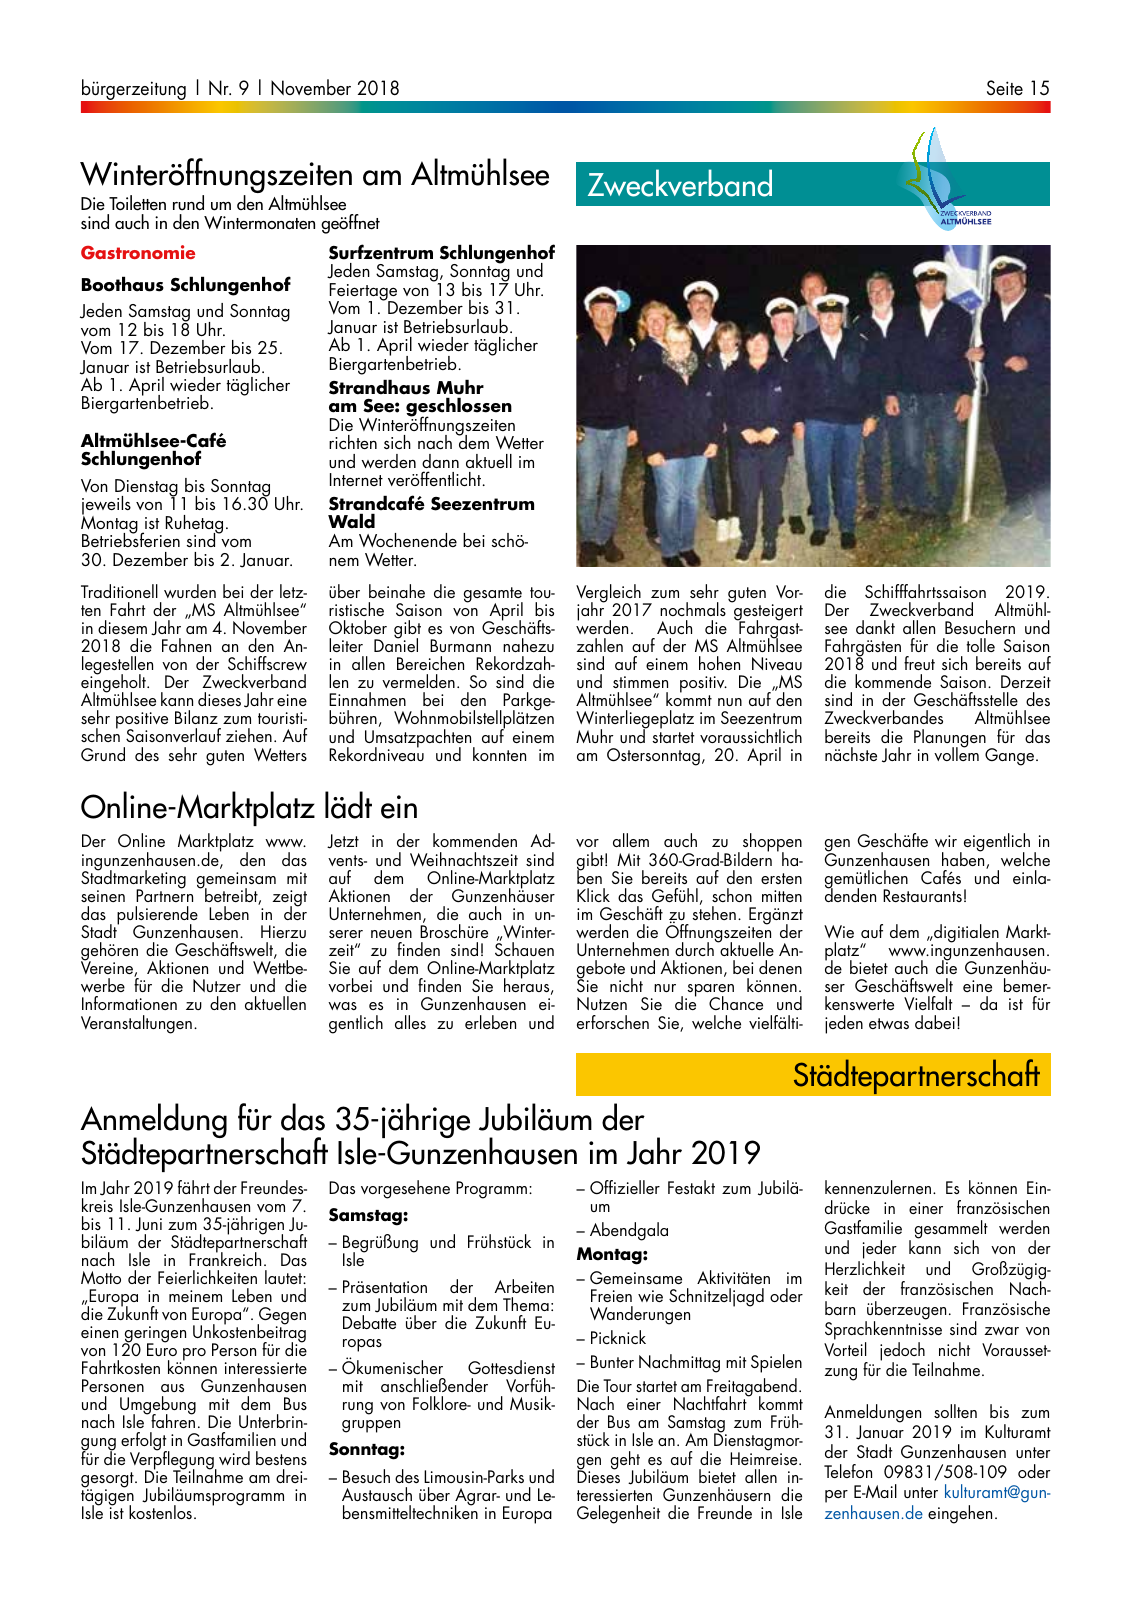 Vorschau buergerzeitung_09_2018 Seite 15